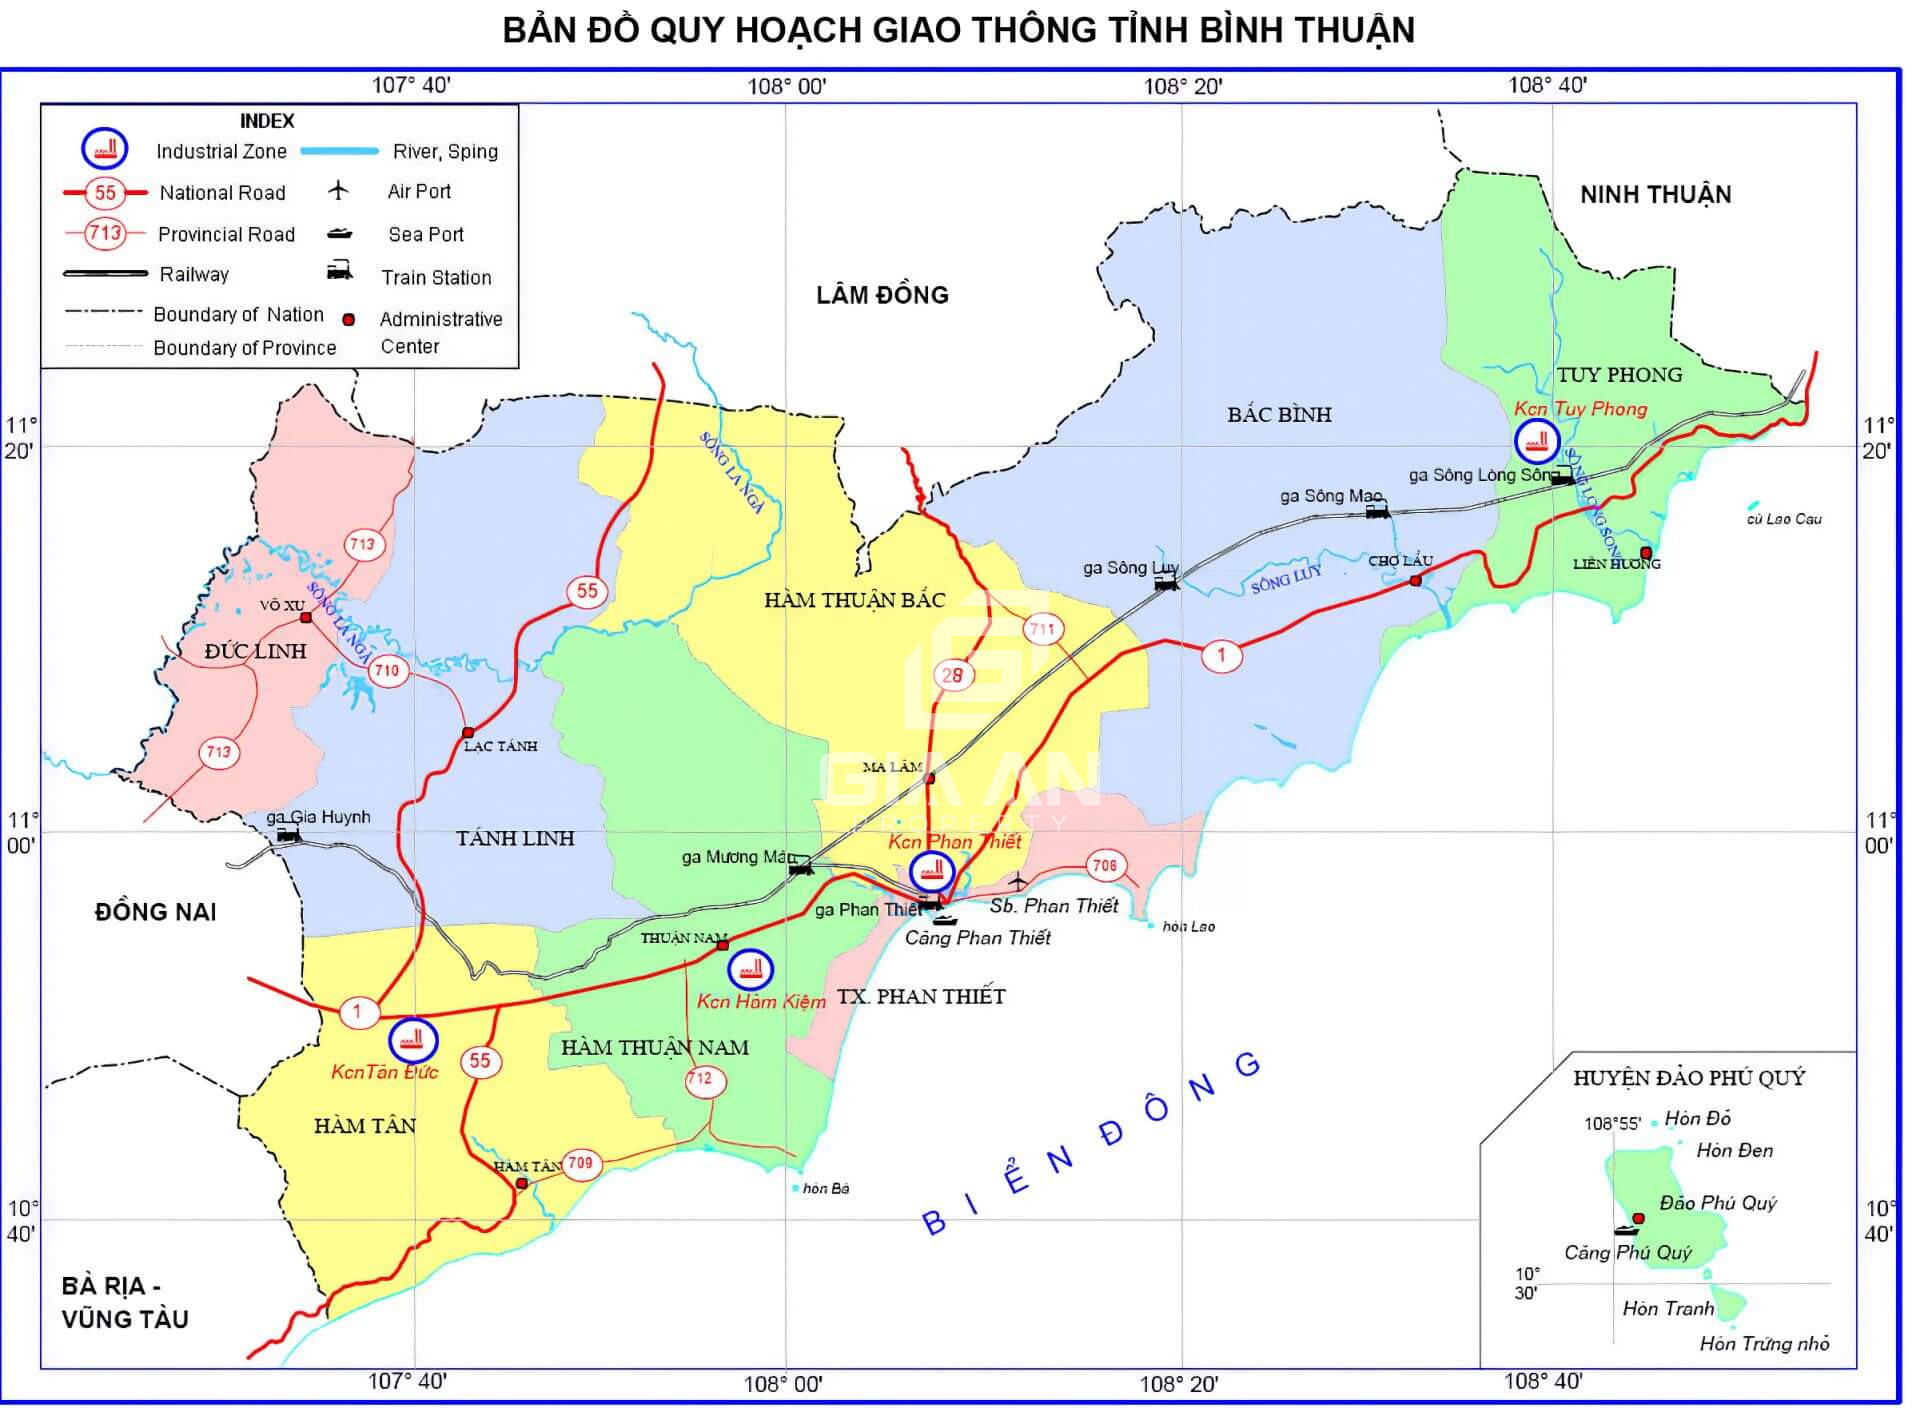 Bản đồ quy hoạch phát triển giao thông tỉnh Bình Thuận